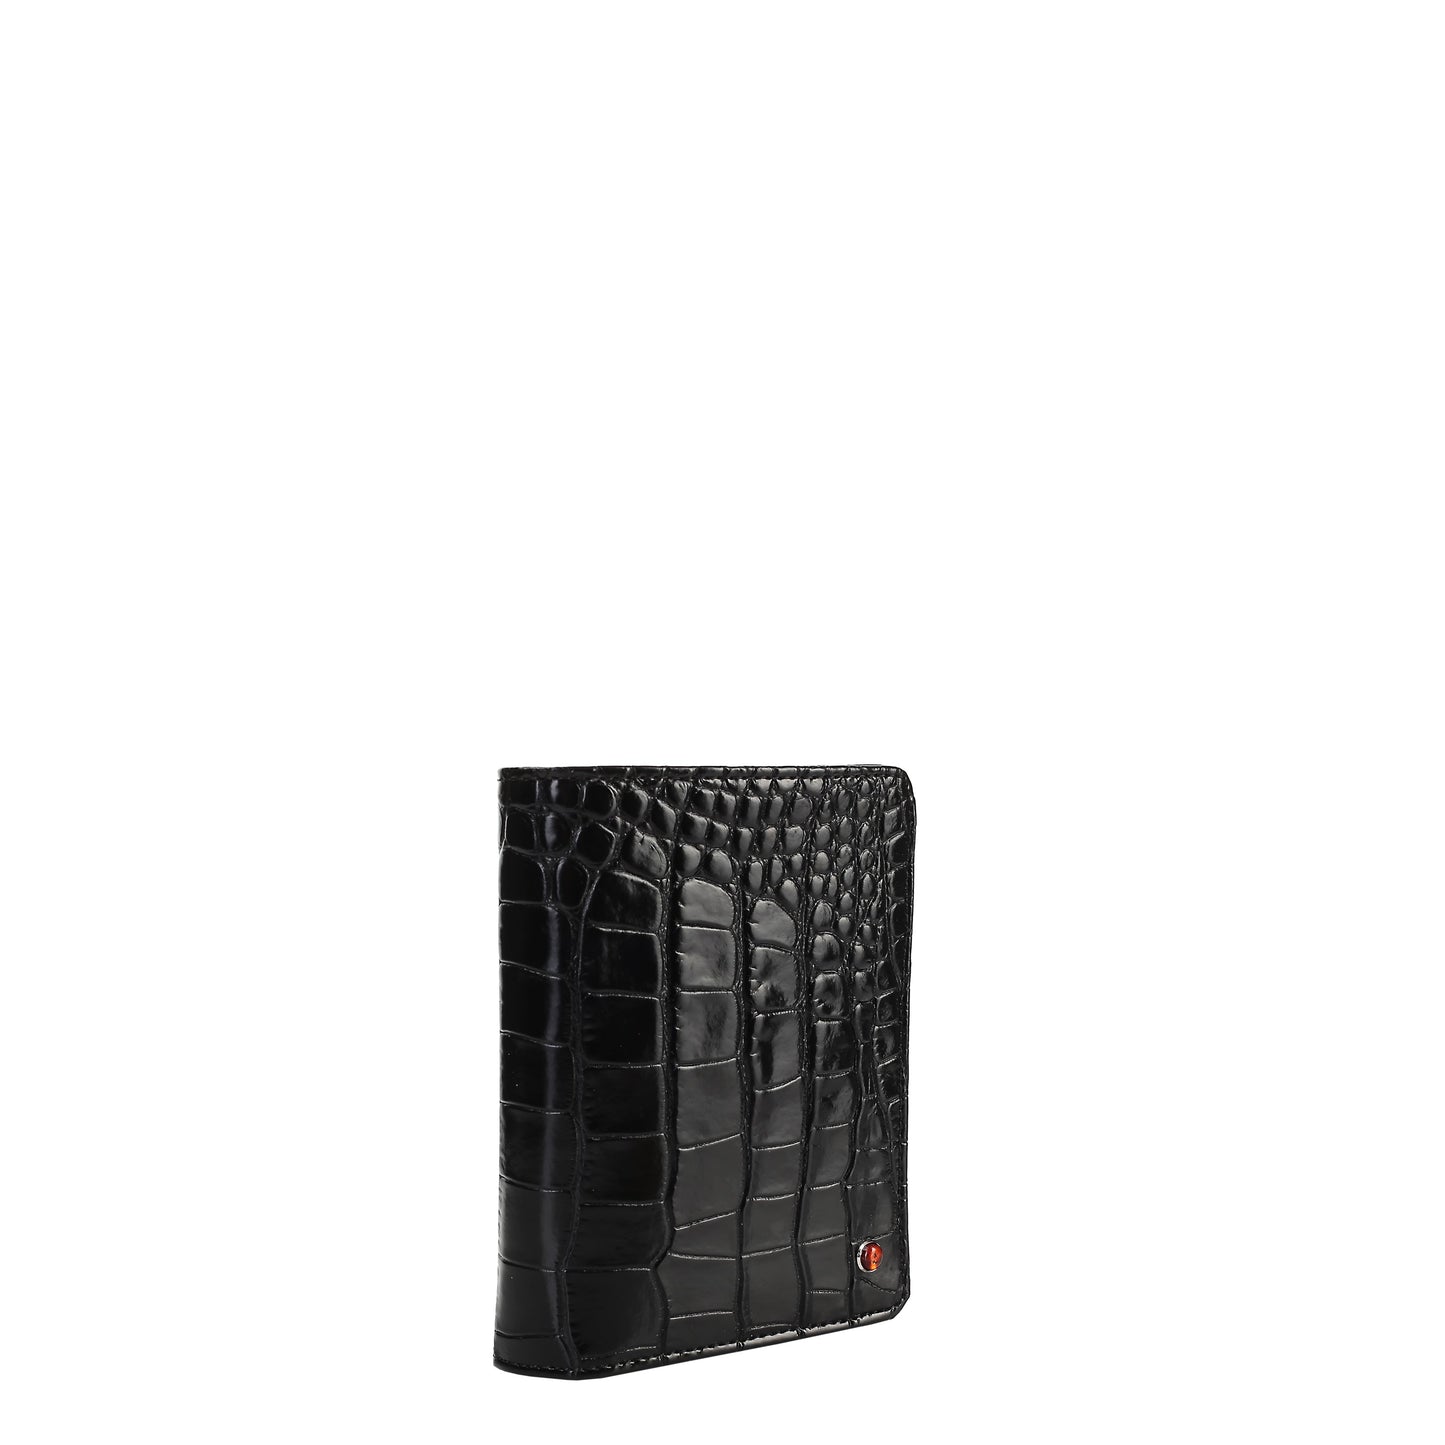 Croco black leather men's wallet